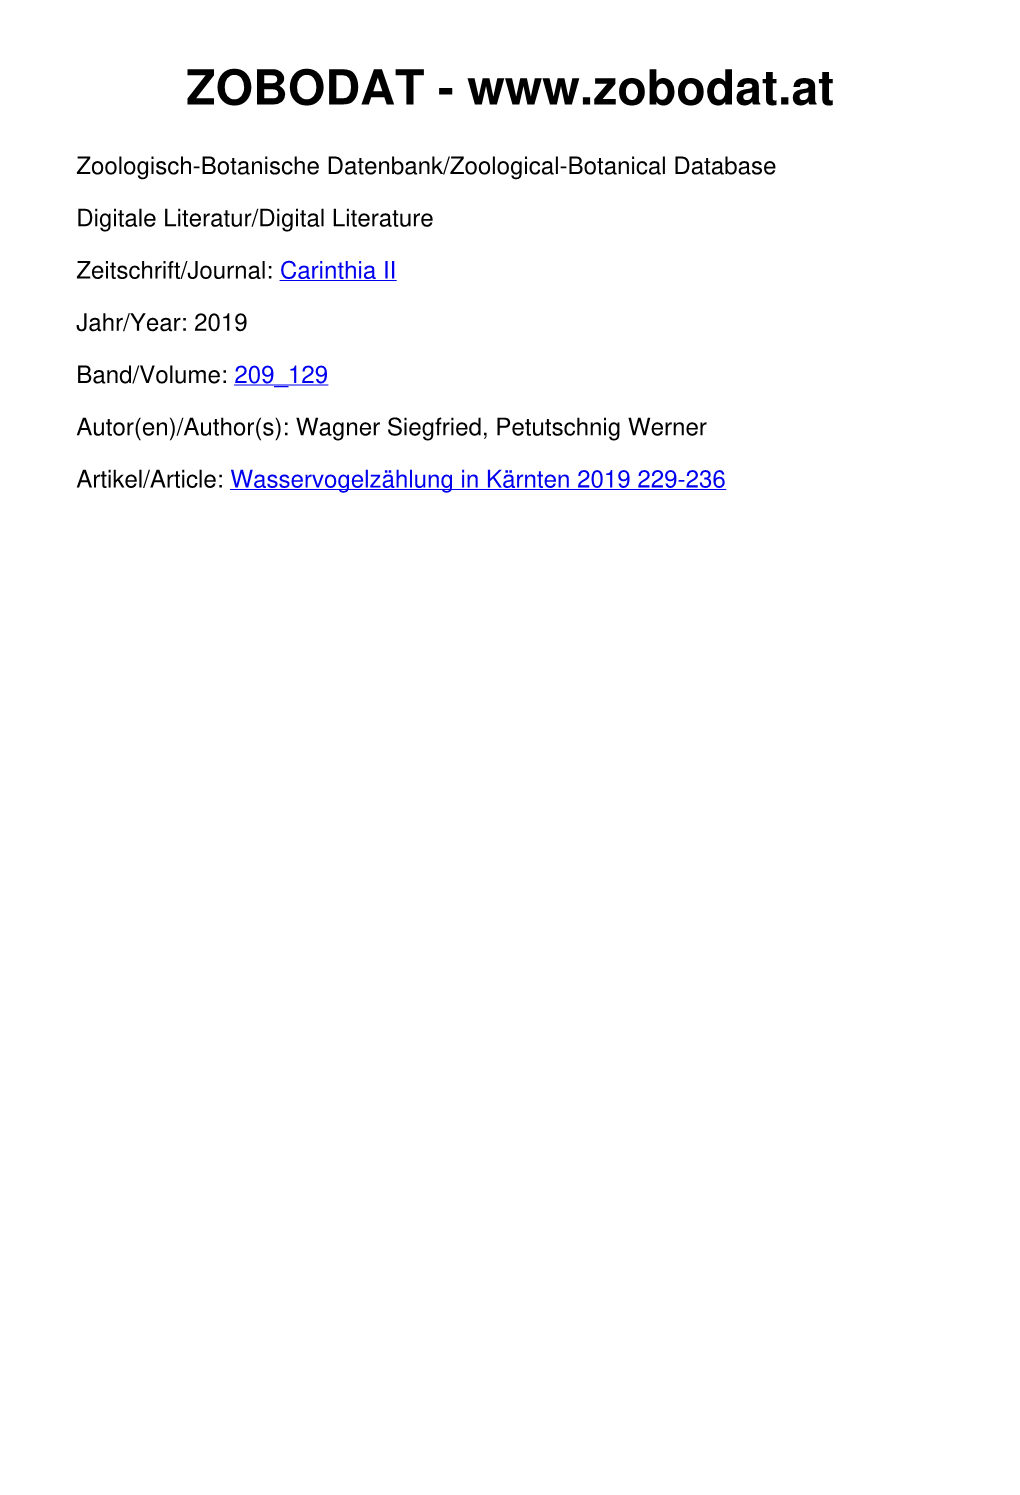 Wasservogelzählung in Kärnten 2019 229-236 Carinthia II N 209./129